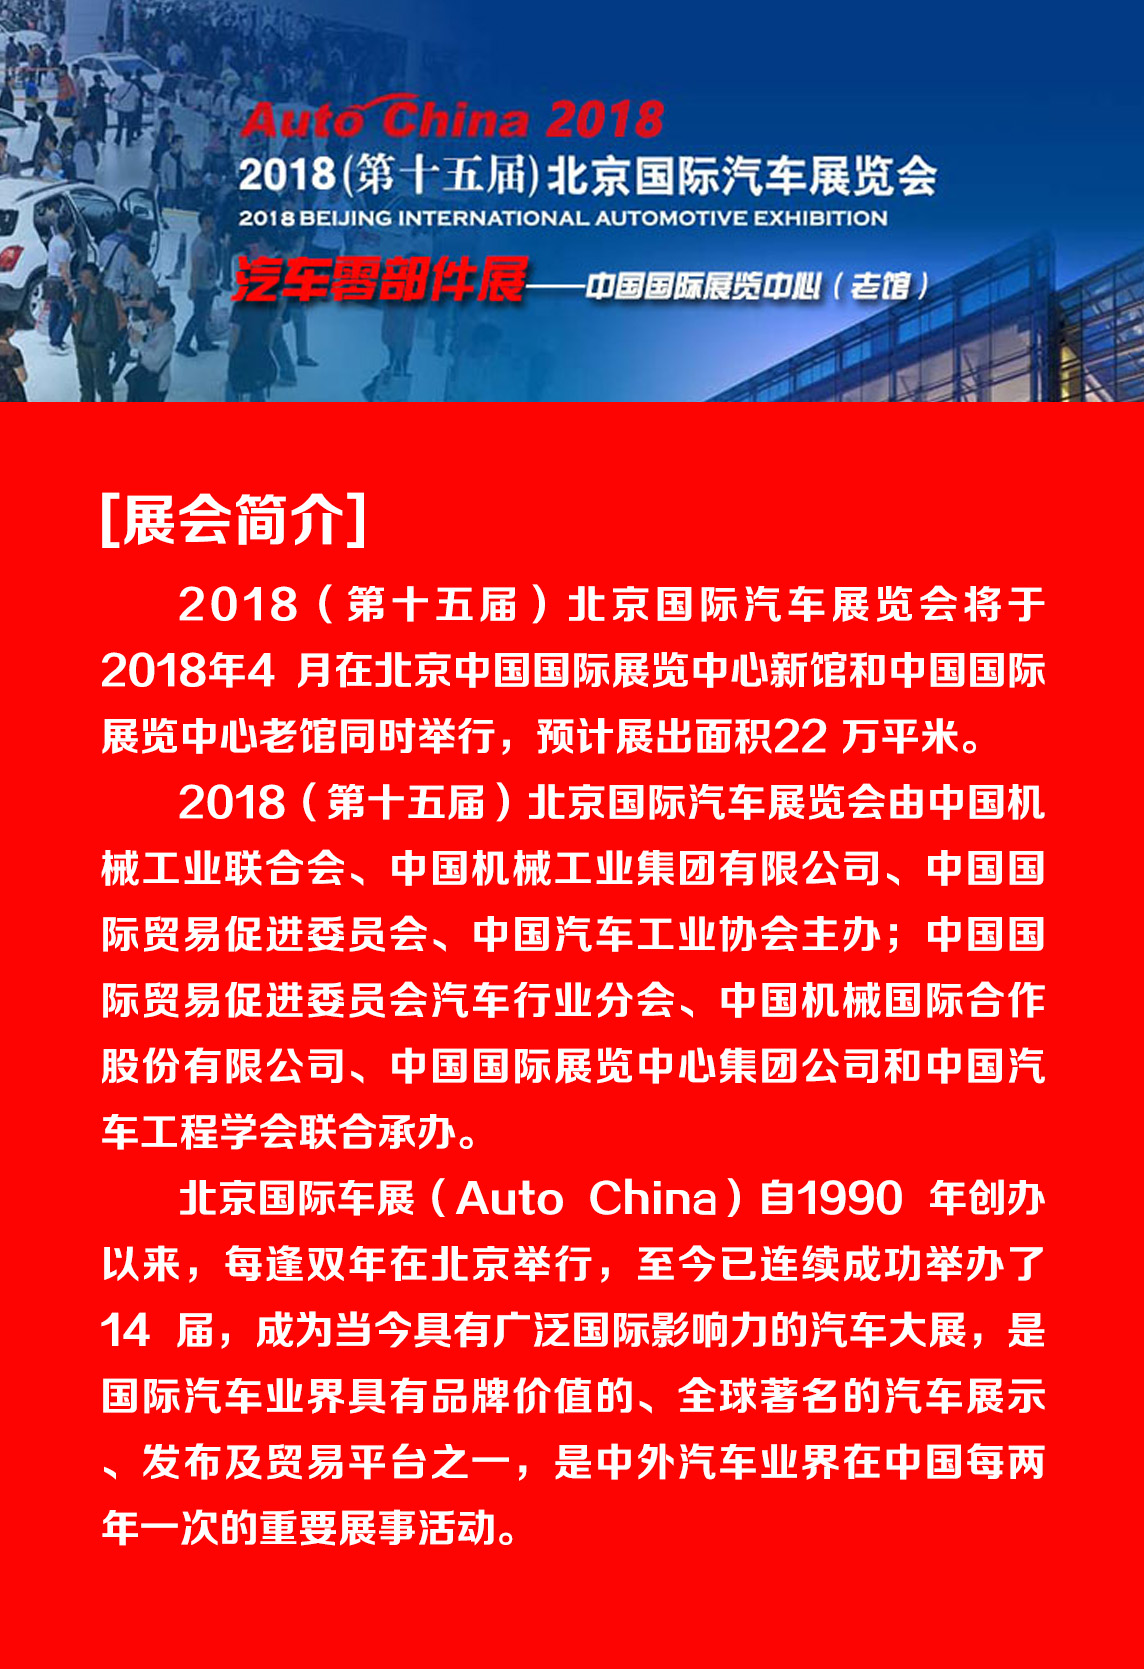 蘇州通錦成功亮相2018北京國際汽車展覽會